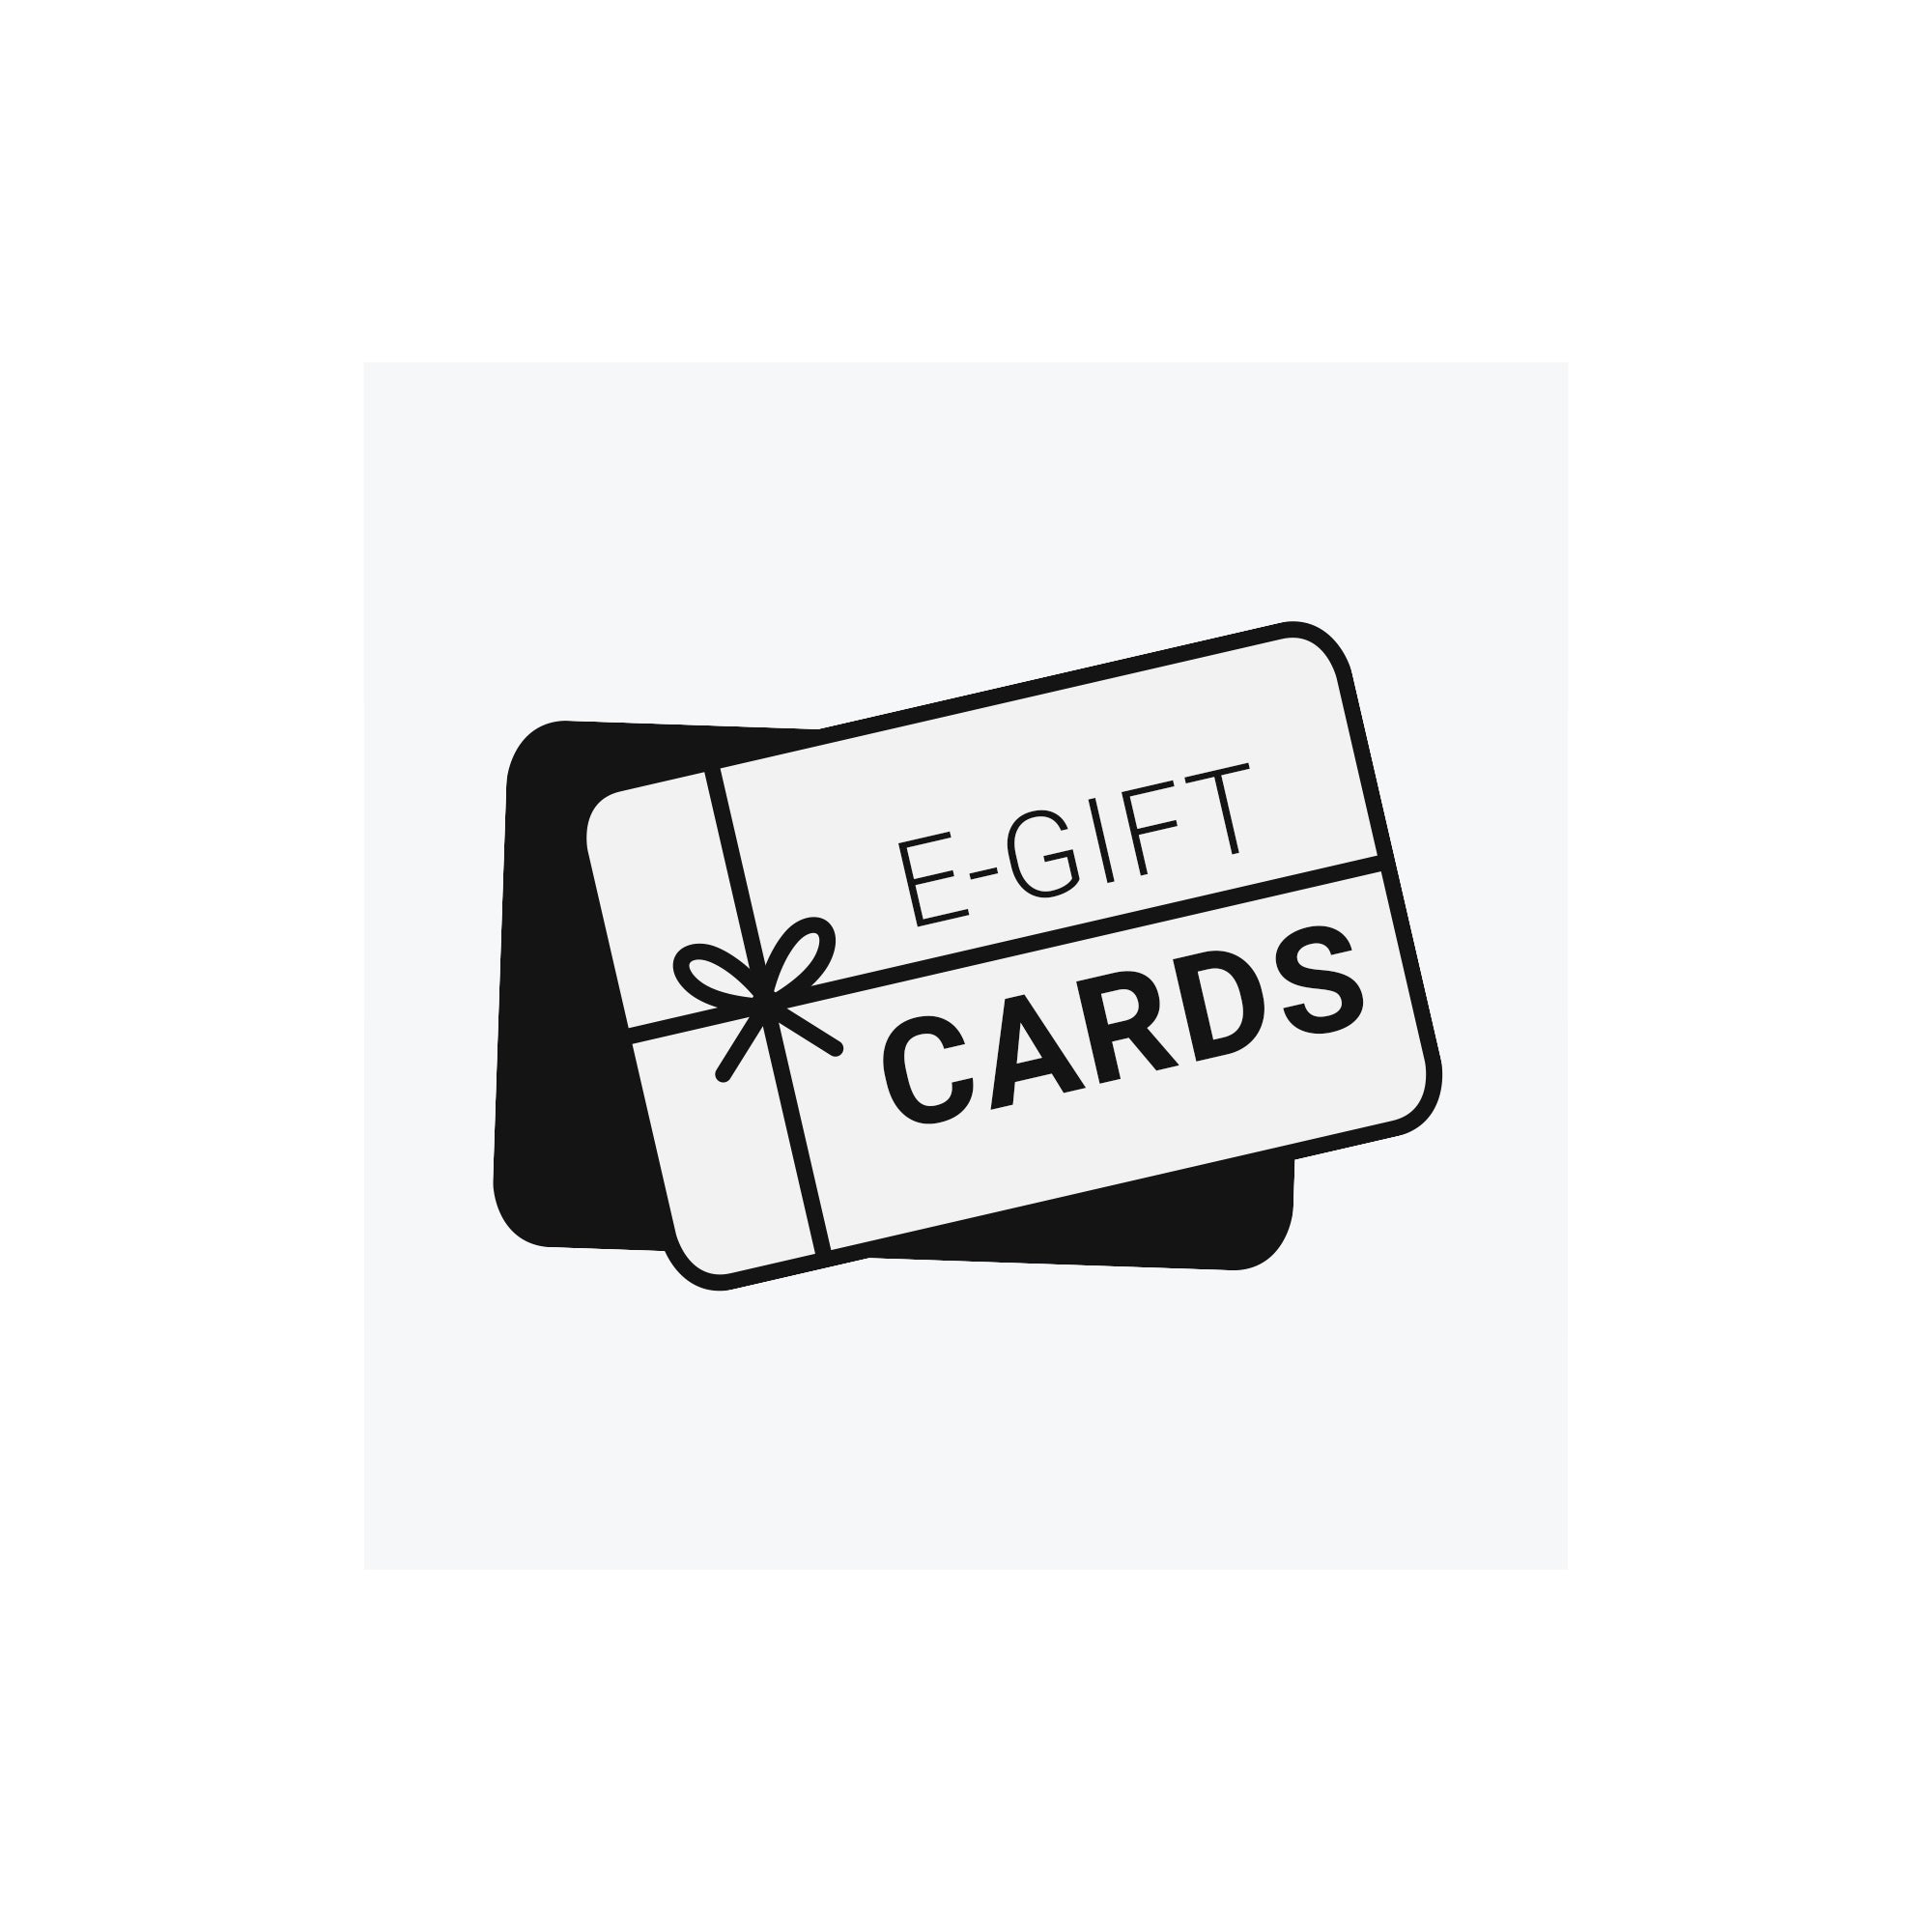 How do I redeem an eGift Card?